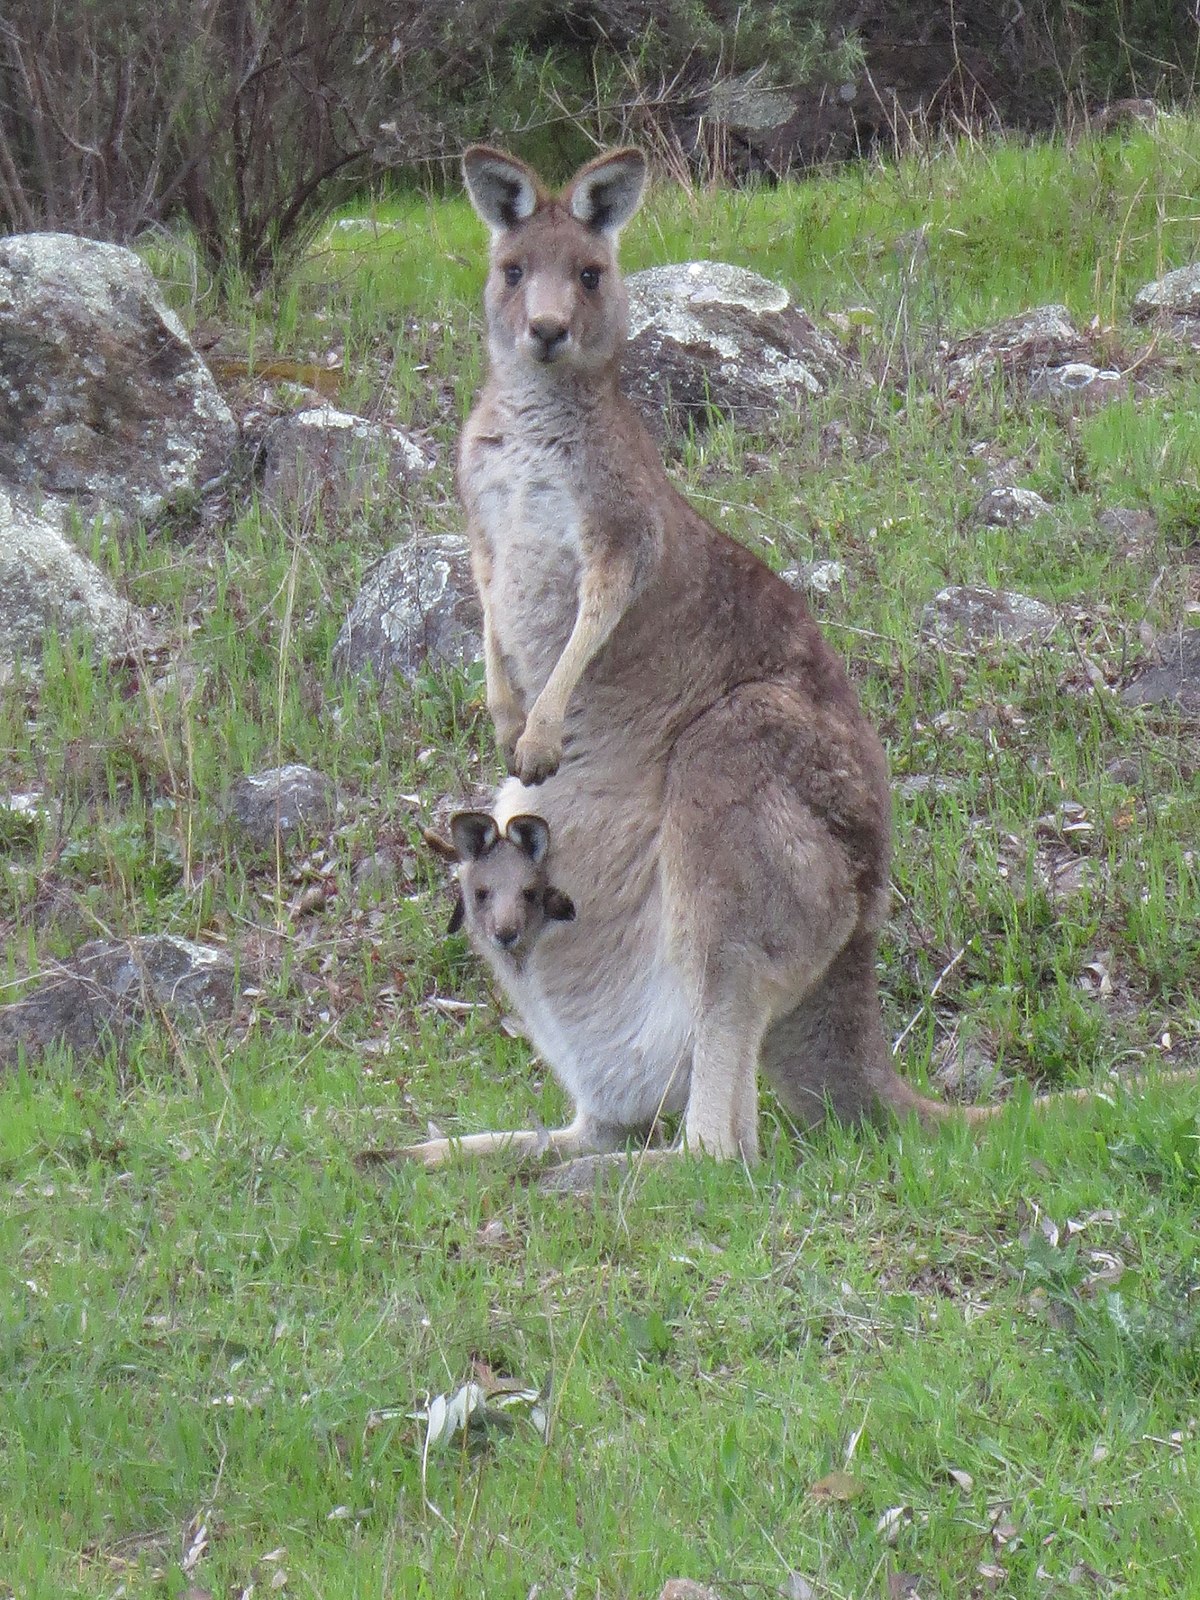 Eastern grey kangaroo - Wikipedia